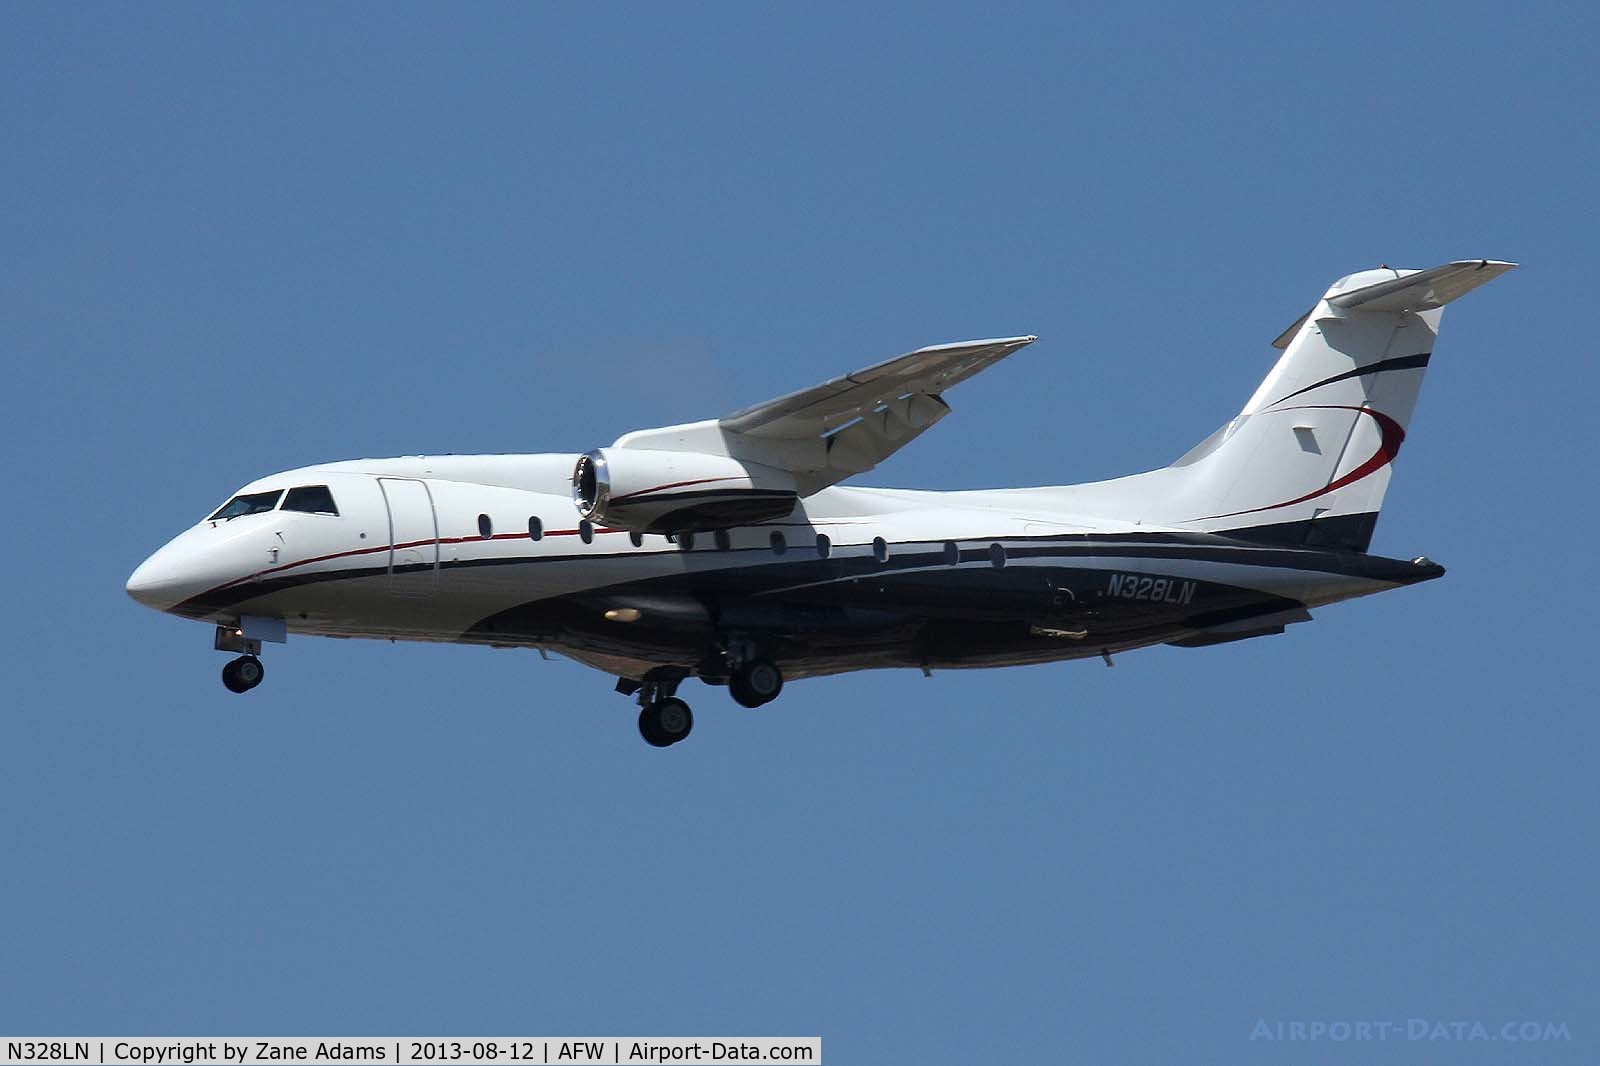 N328LN, 2000 Fairchild Dornier 328-300 328JET C/N 3150, Landing at Alliance Airport - Fort Worth, TX